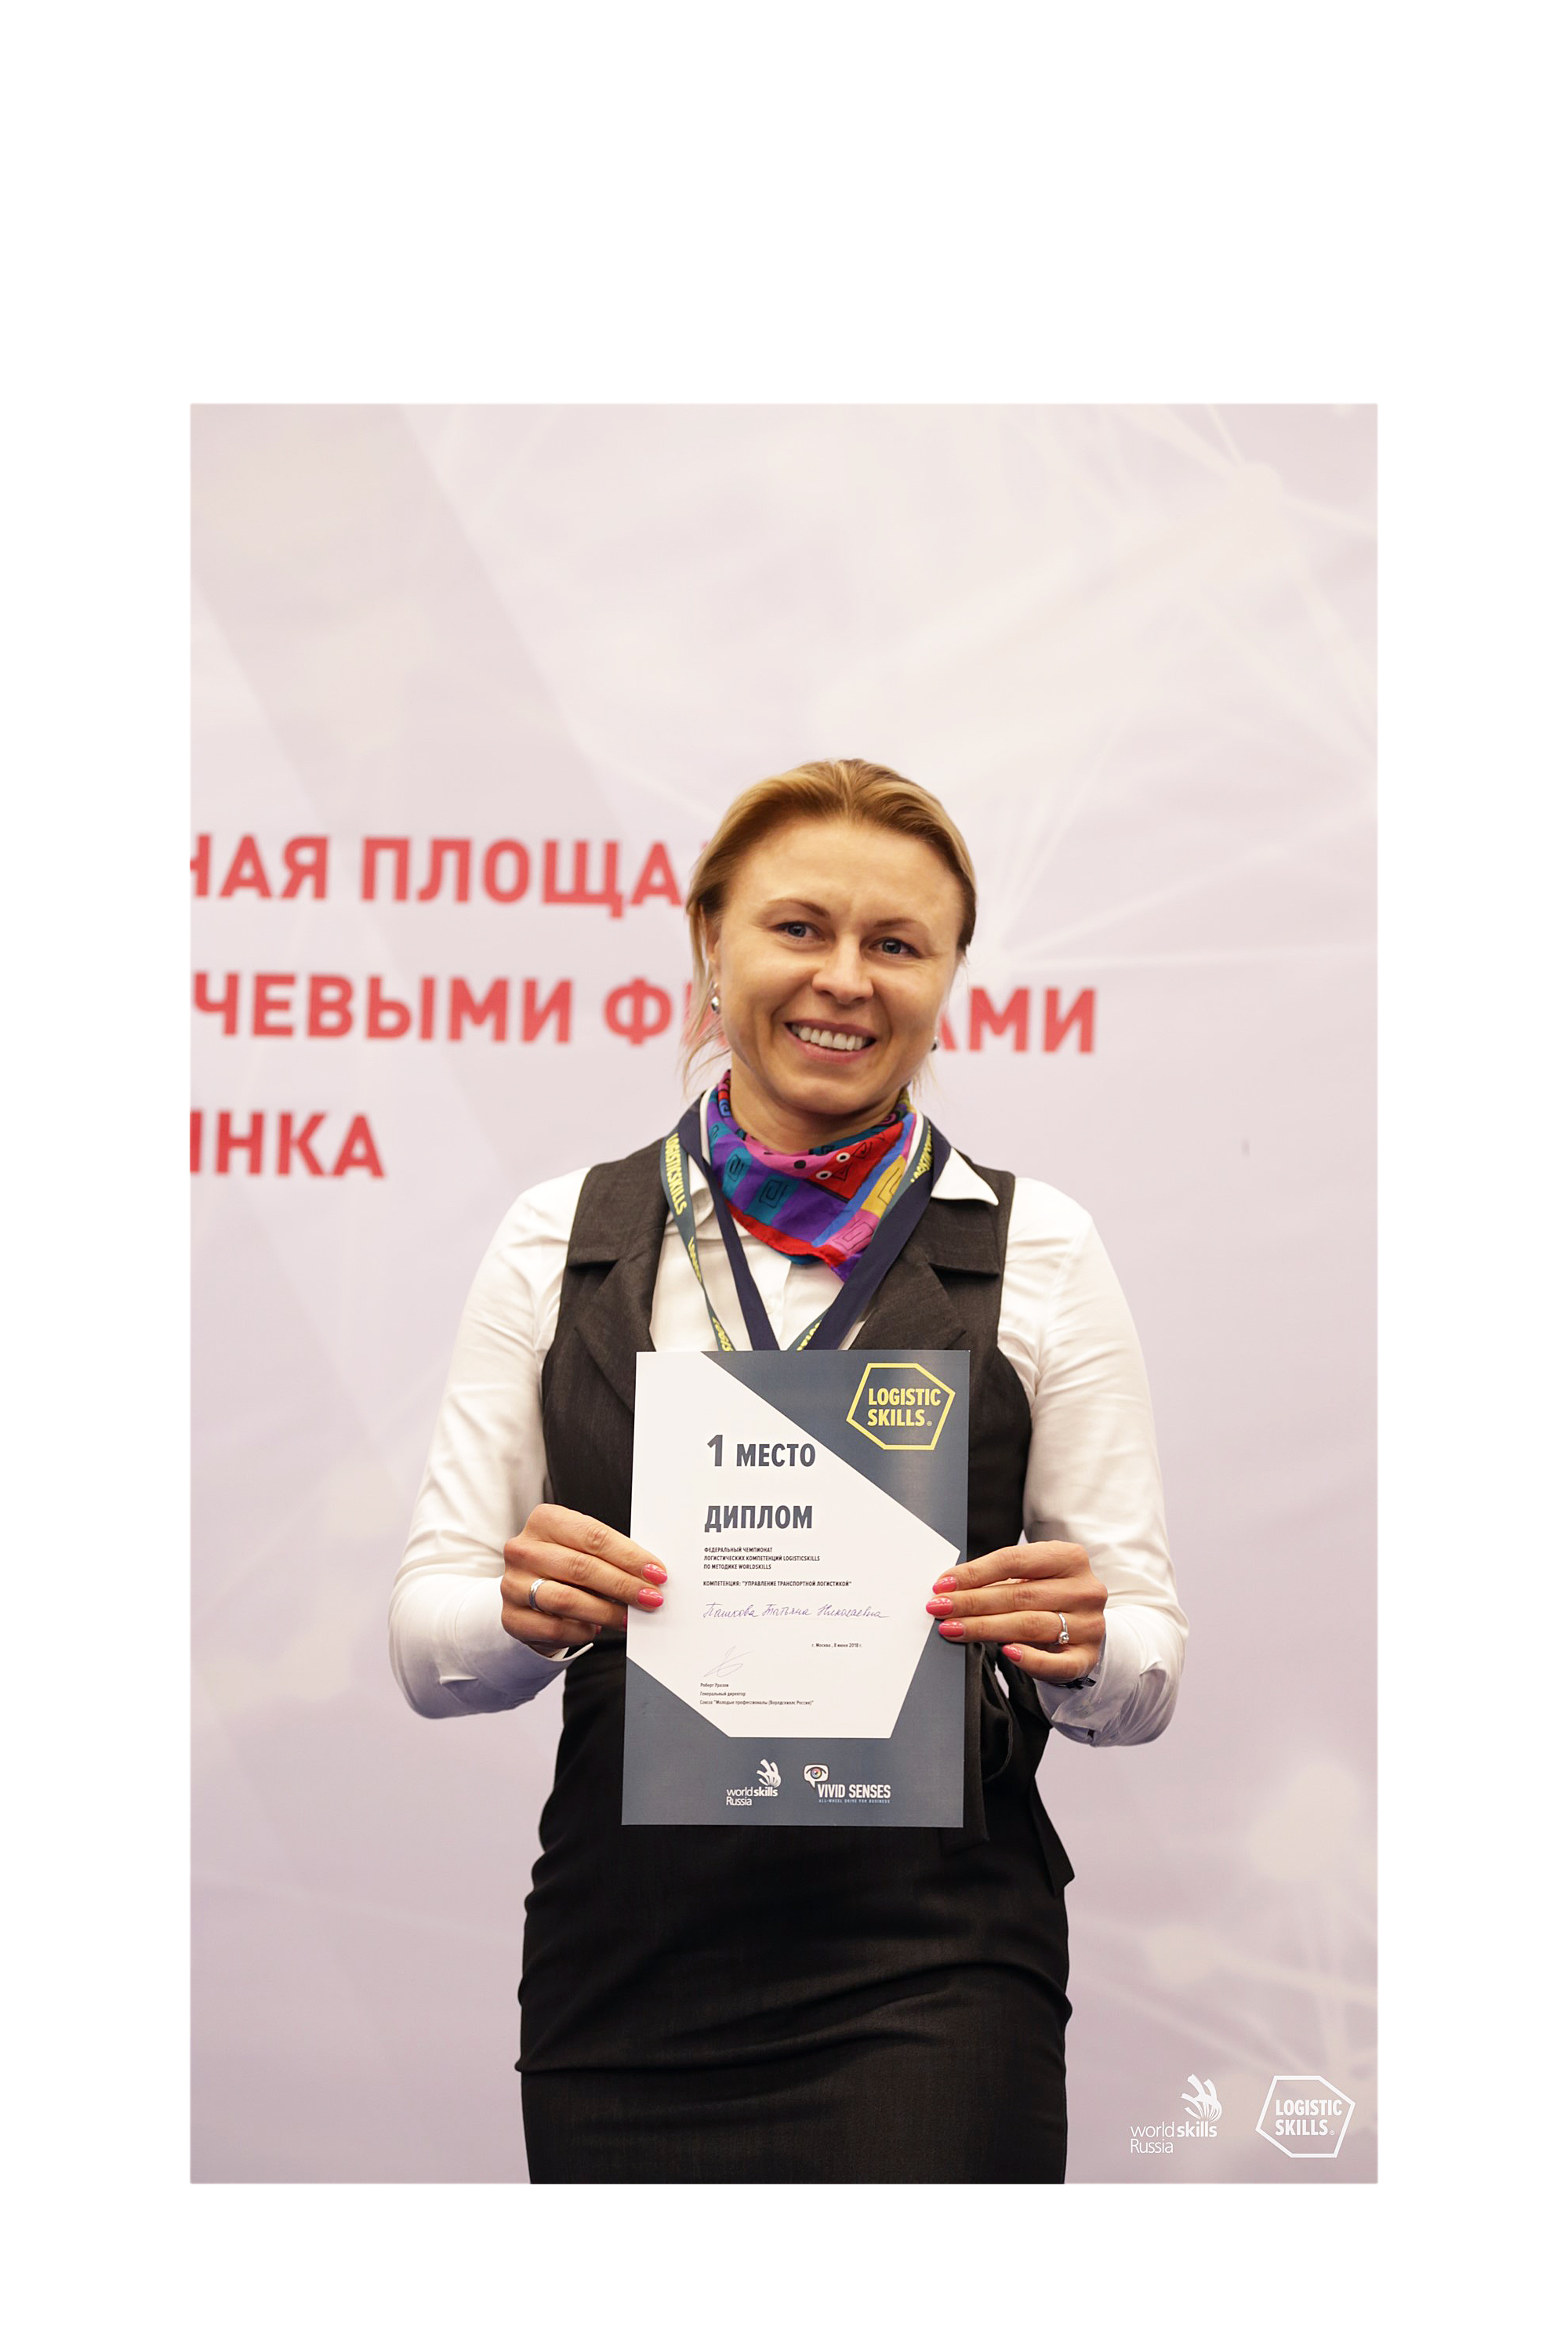 Татьяна Пашкова, фото с дипломом